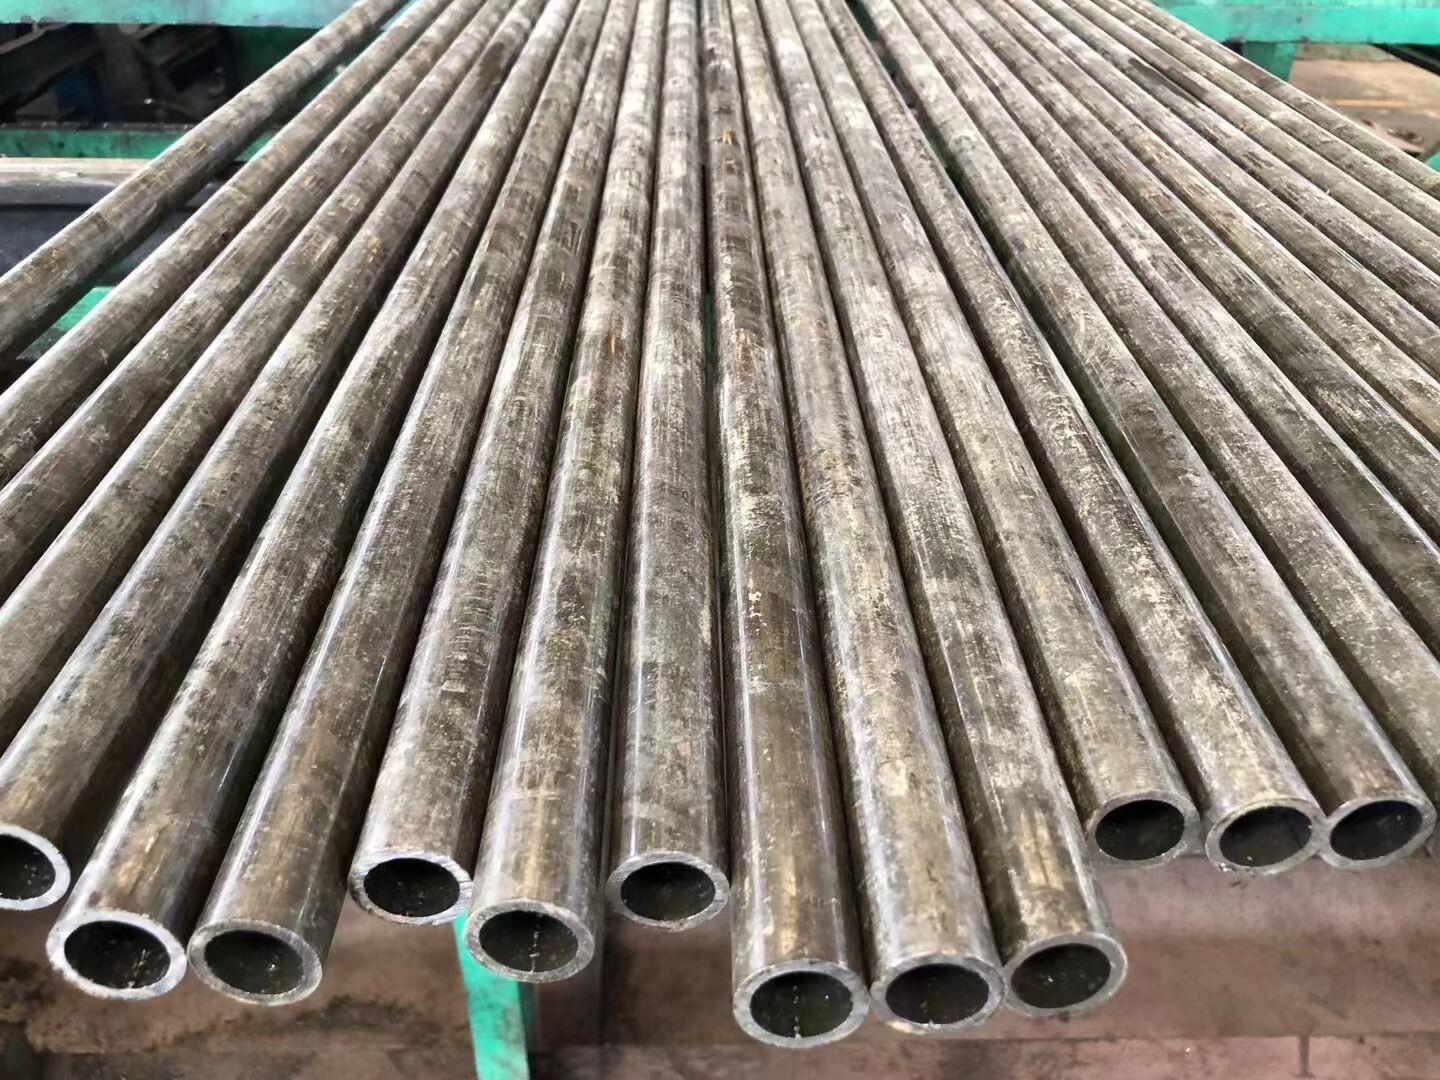 High Precision Seamless Aluminum Tubing 6061 Thin Wall